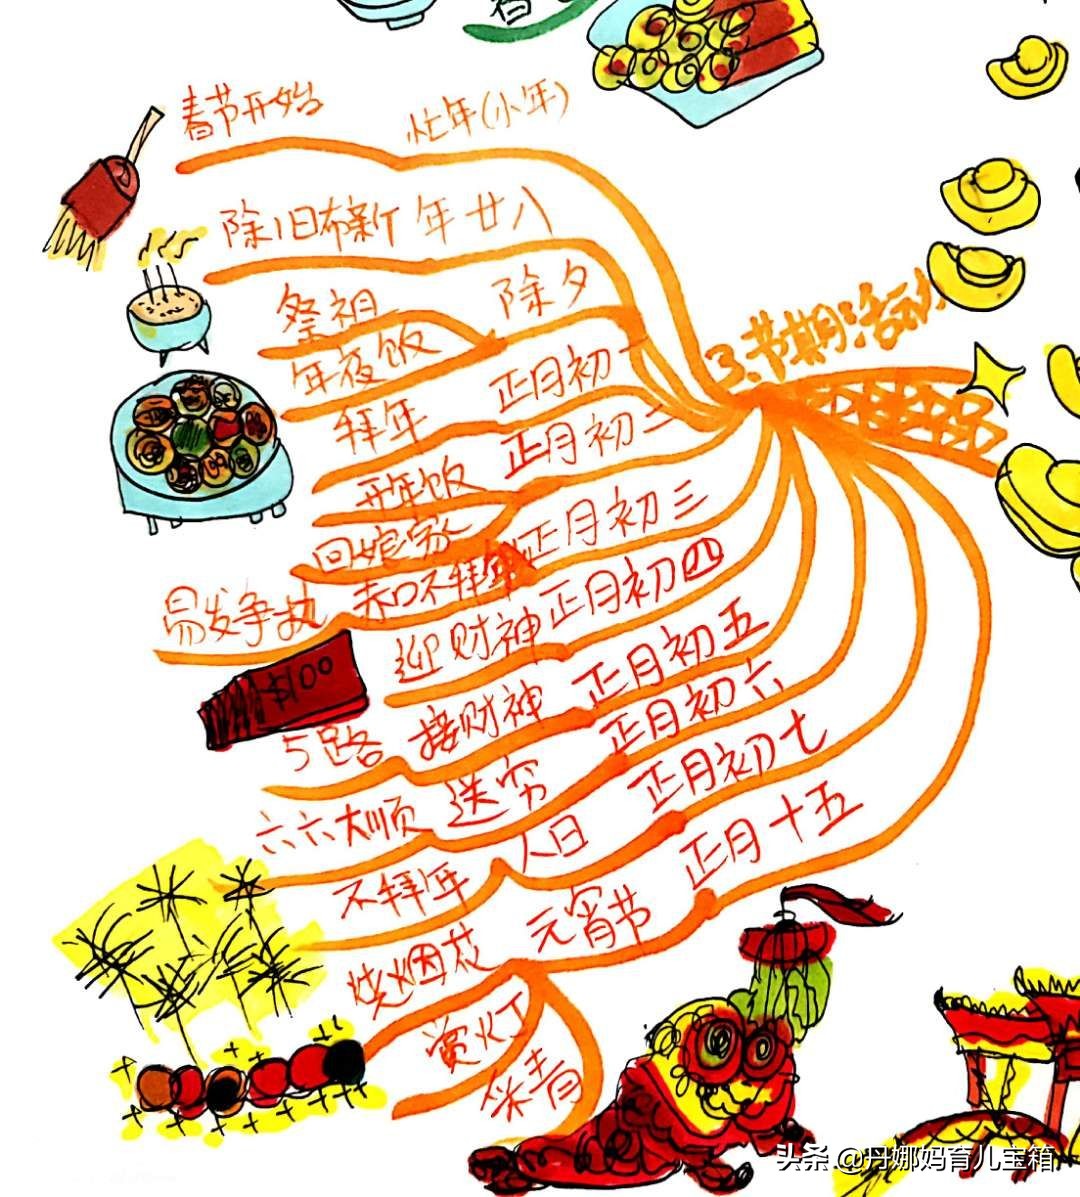 春节传统民俗:1张思维导图让孩子轻松掌握农历新年每天活动寓意